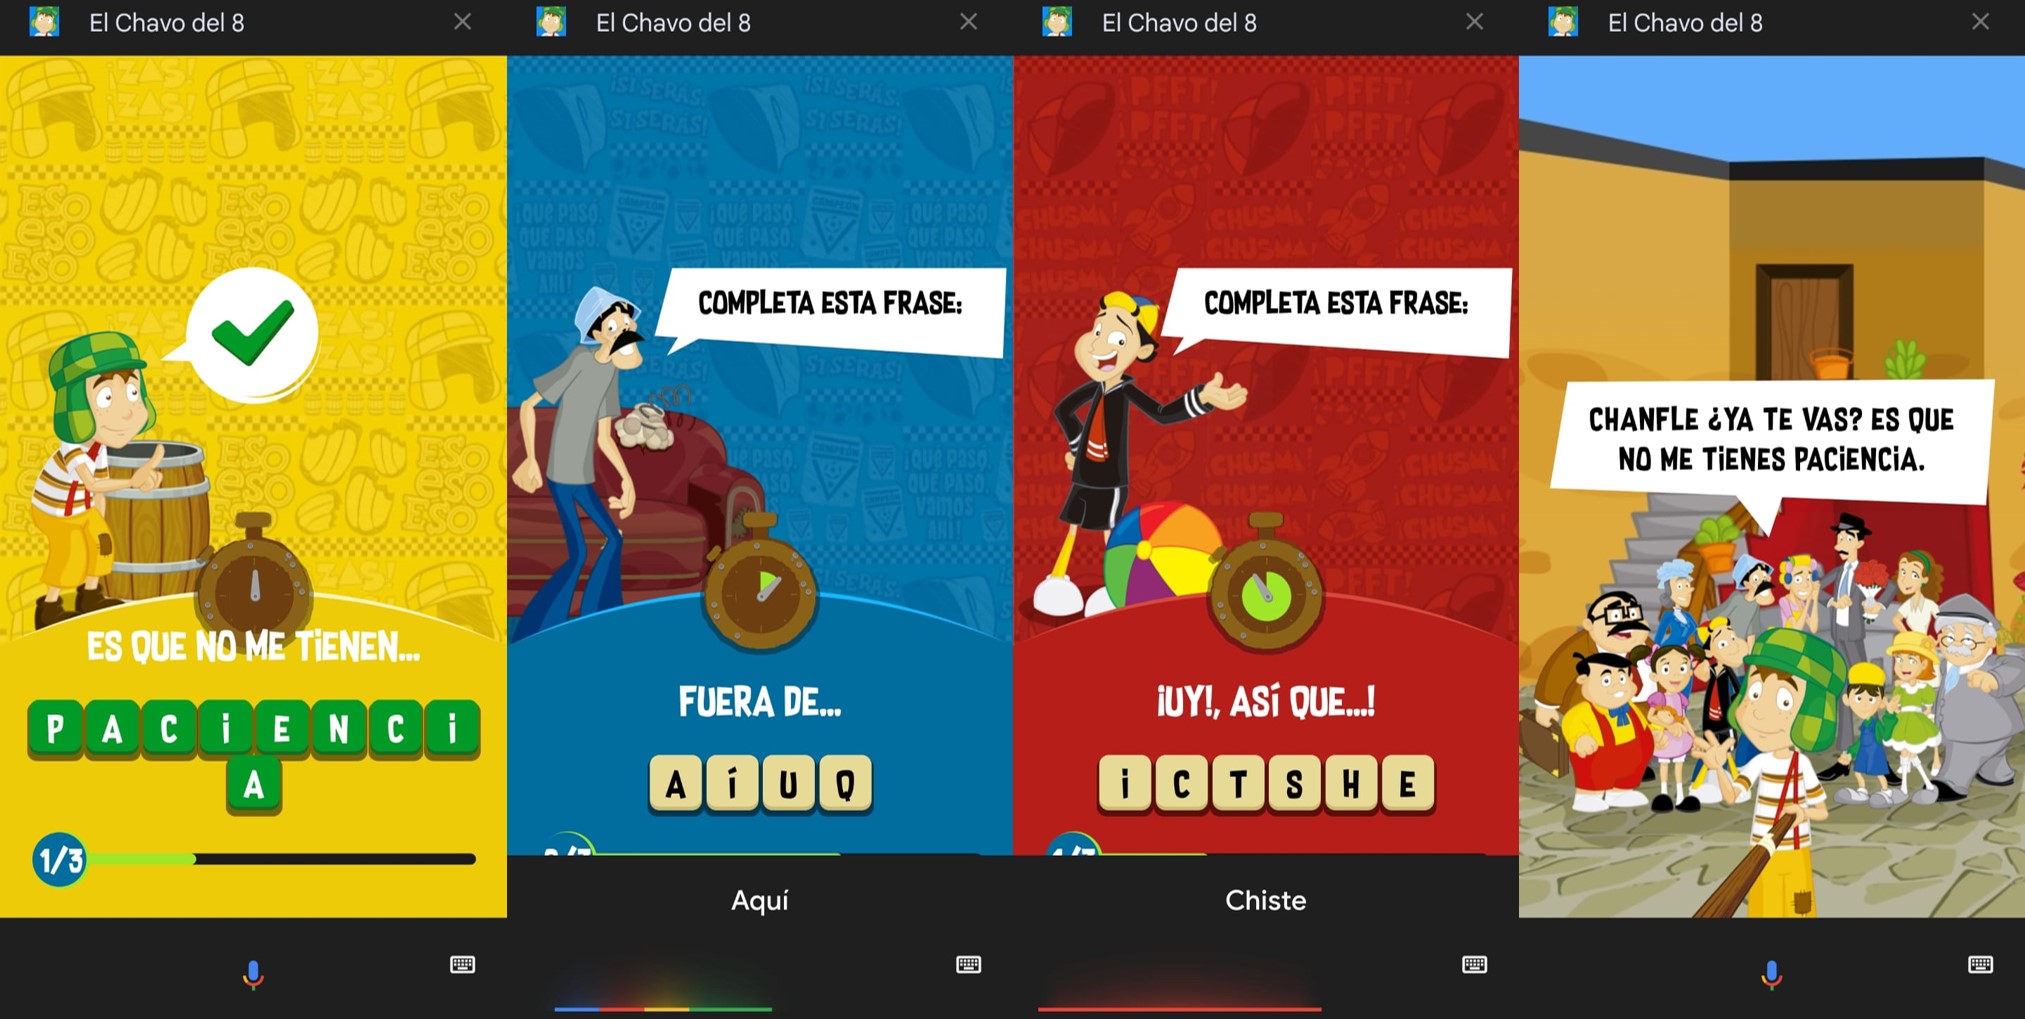 El Asistente de Google permite jugar con el Chavo del 8 y sus amigos desde el celular. (Infobae)